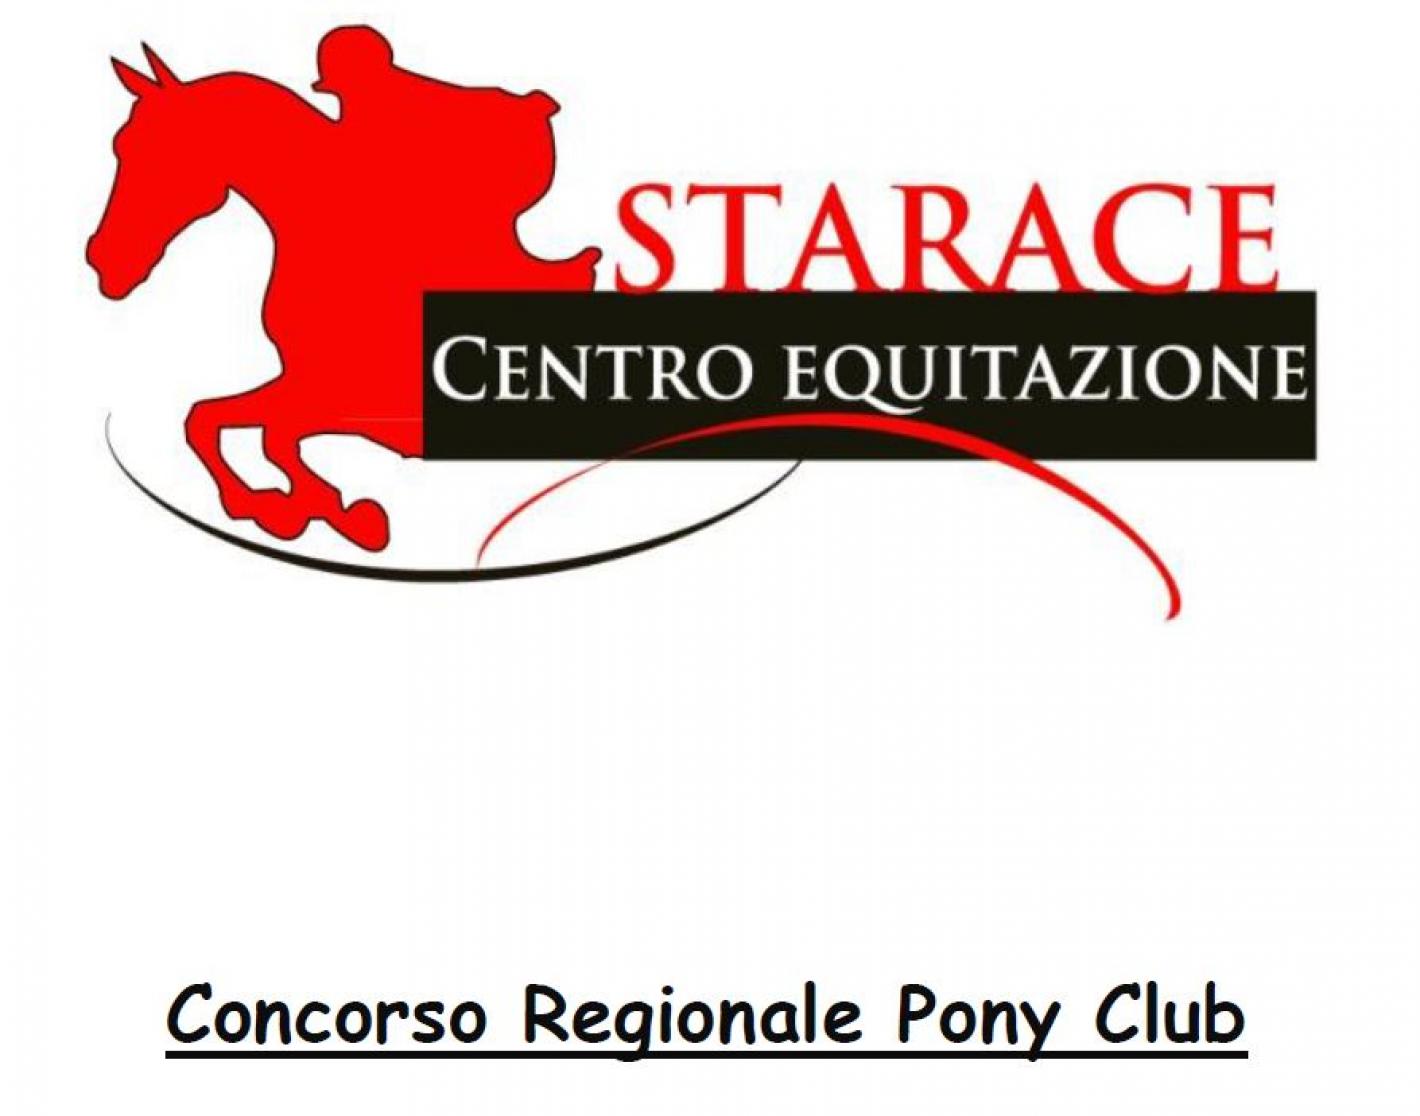 images/calabria/Pony/medium/Concorso_Regionale_Pony_Club.JPG